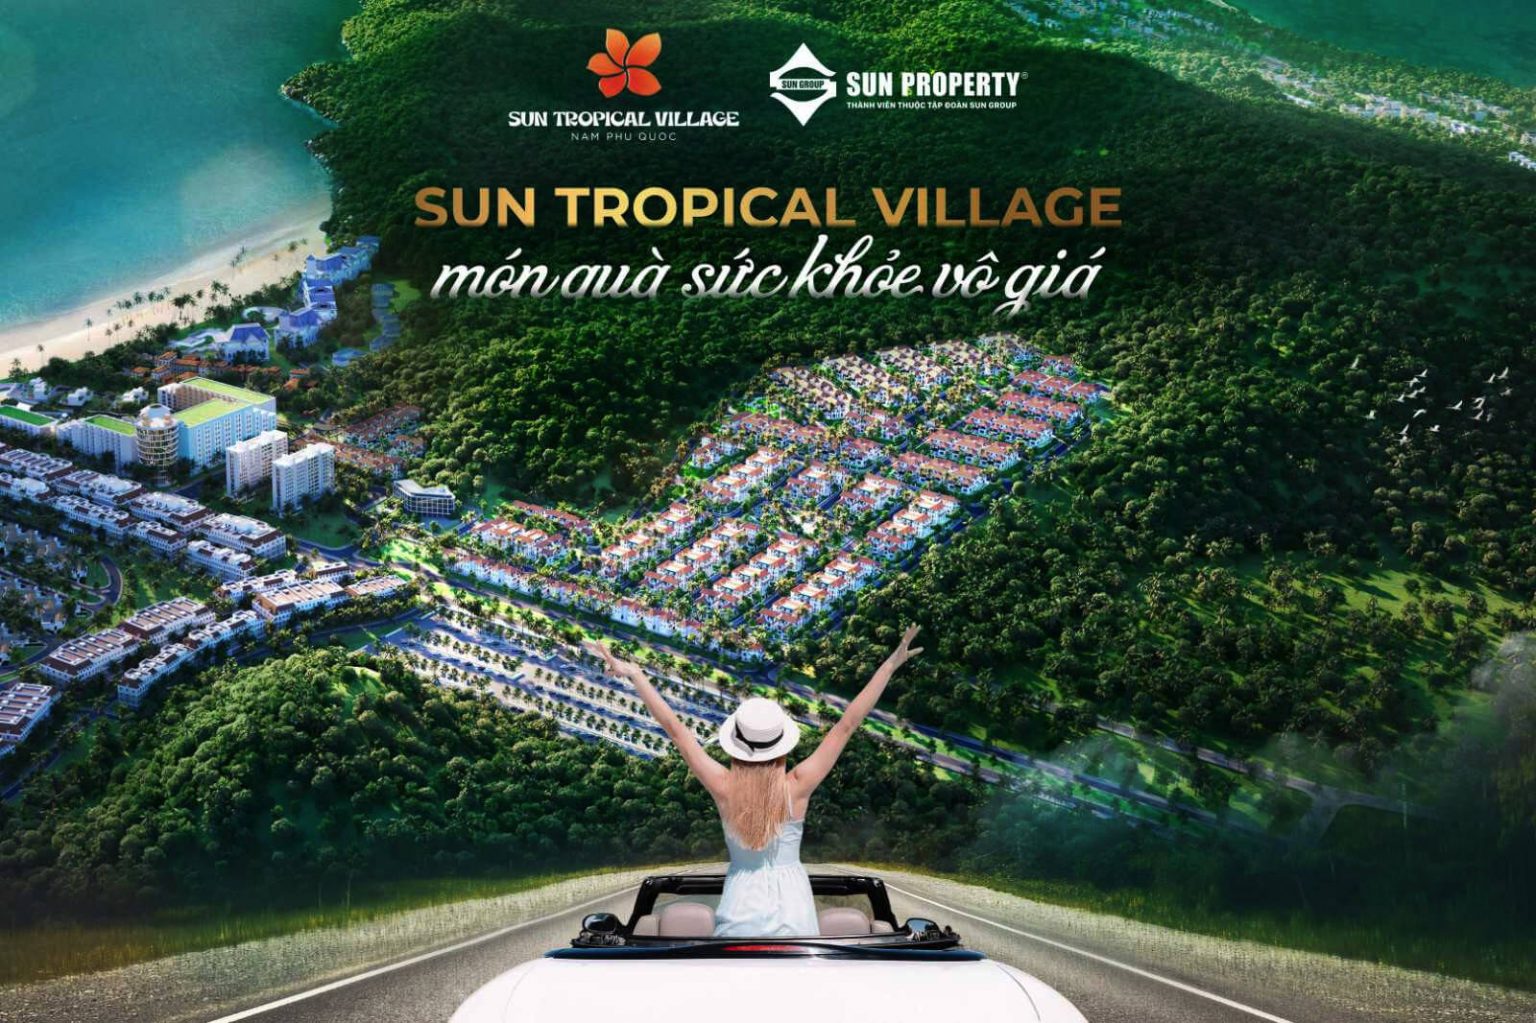 Sun Tropical Village món quà sức khoẻ vô giá